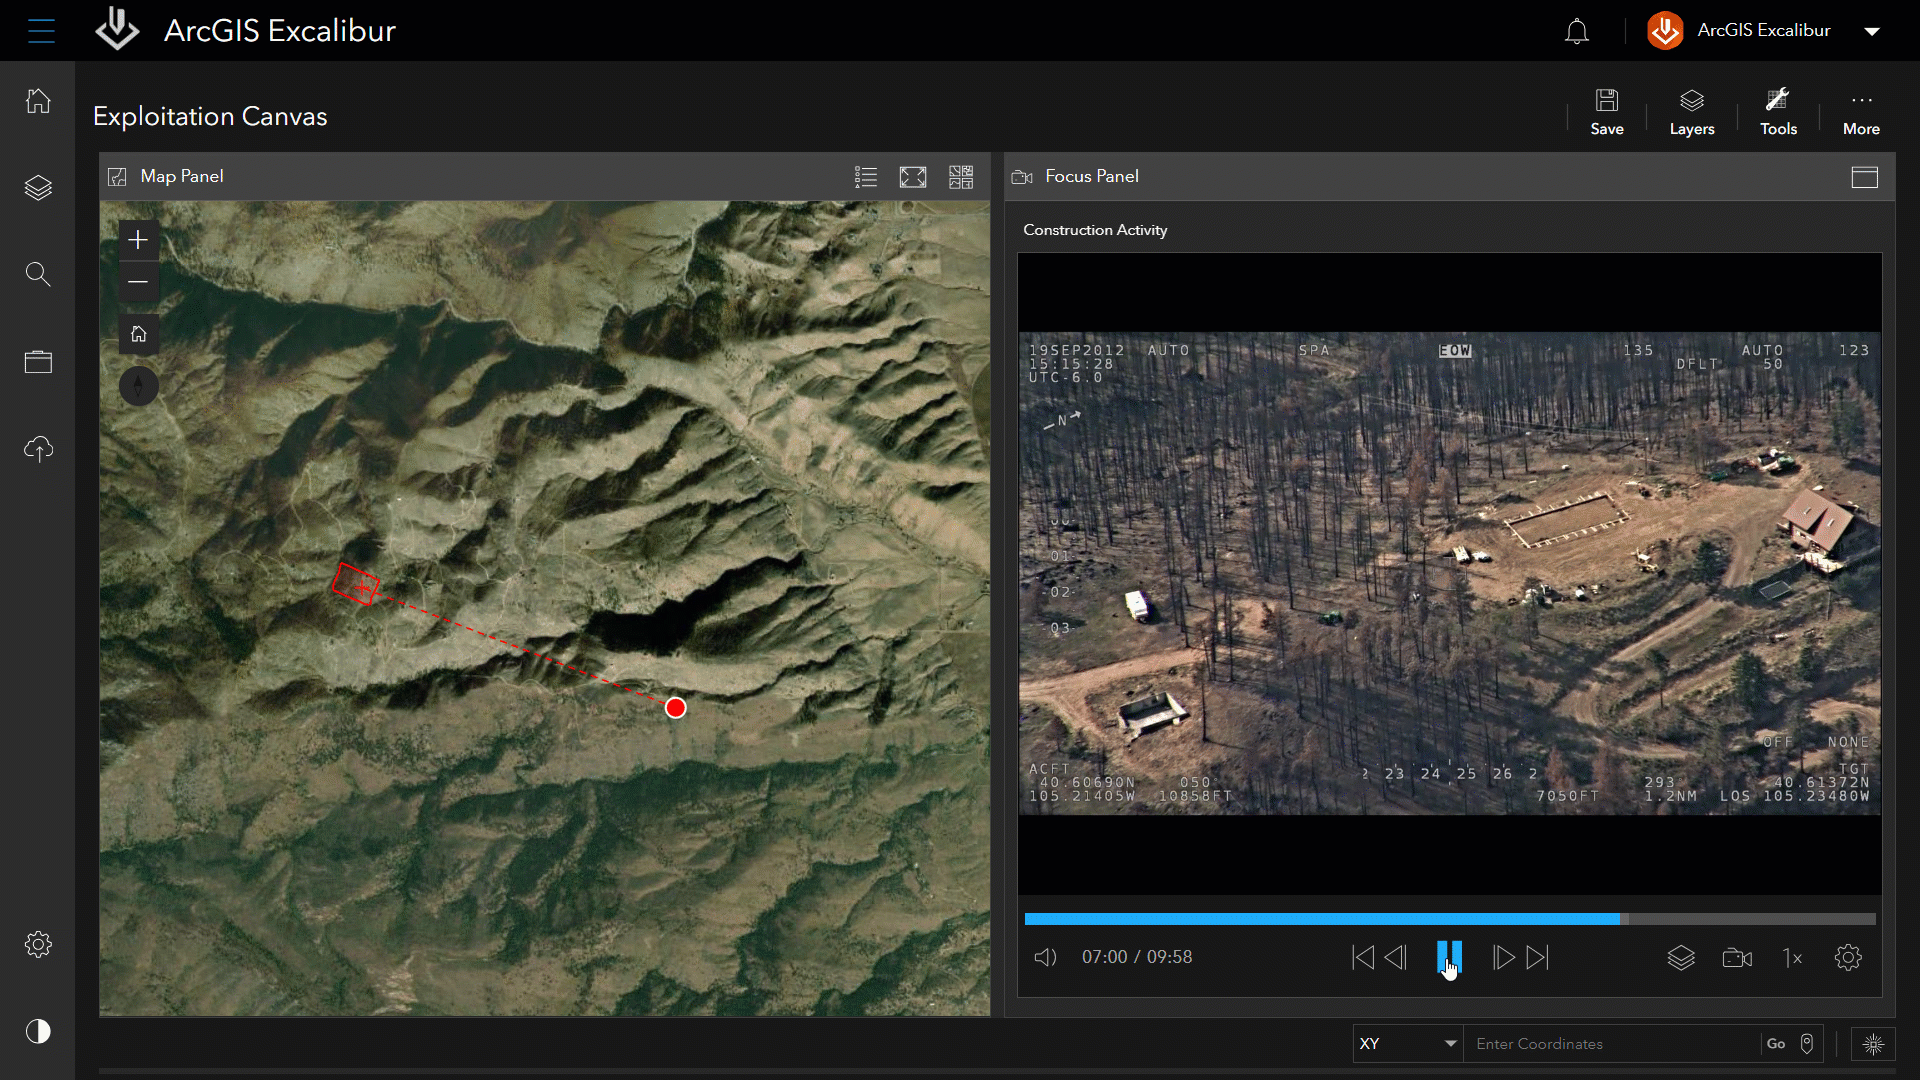 Interface do ArcGIS Excalibur apresentando uma imagem de terreno à esquerda e um vídeo em movimento à direita de terreno e árvores